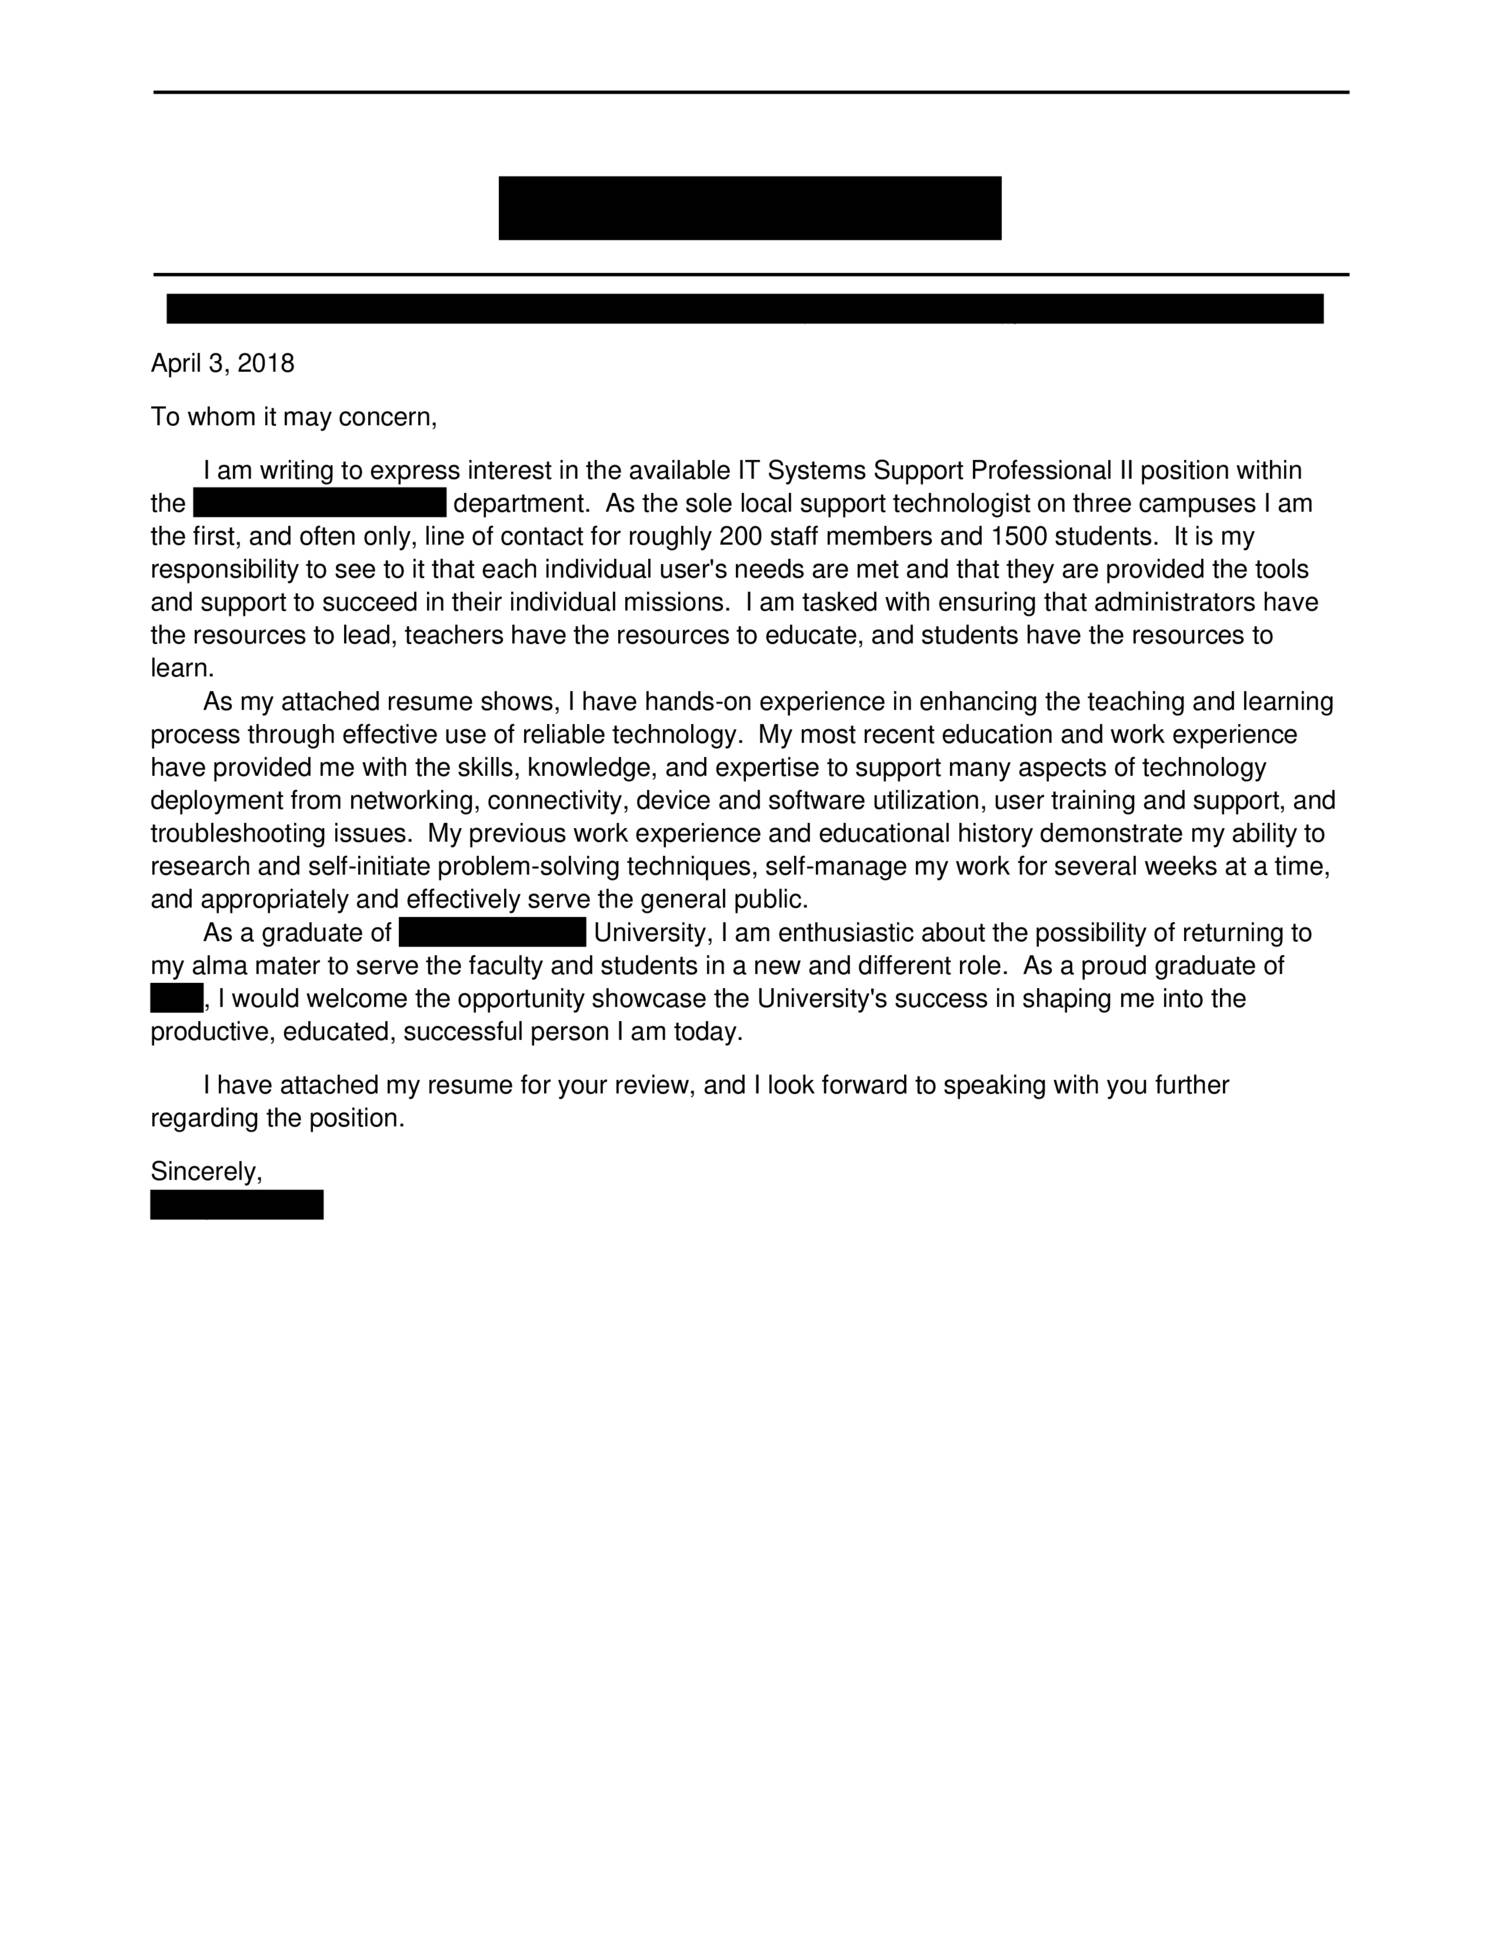 cover letter reddit job